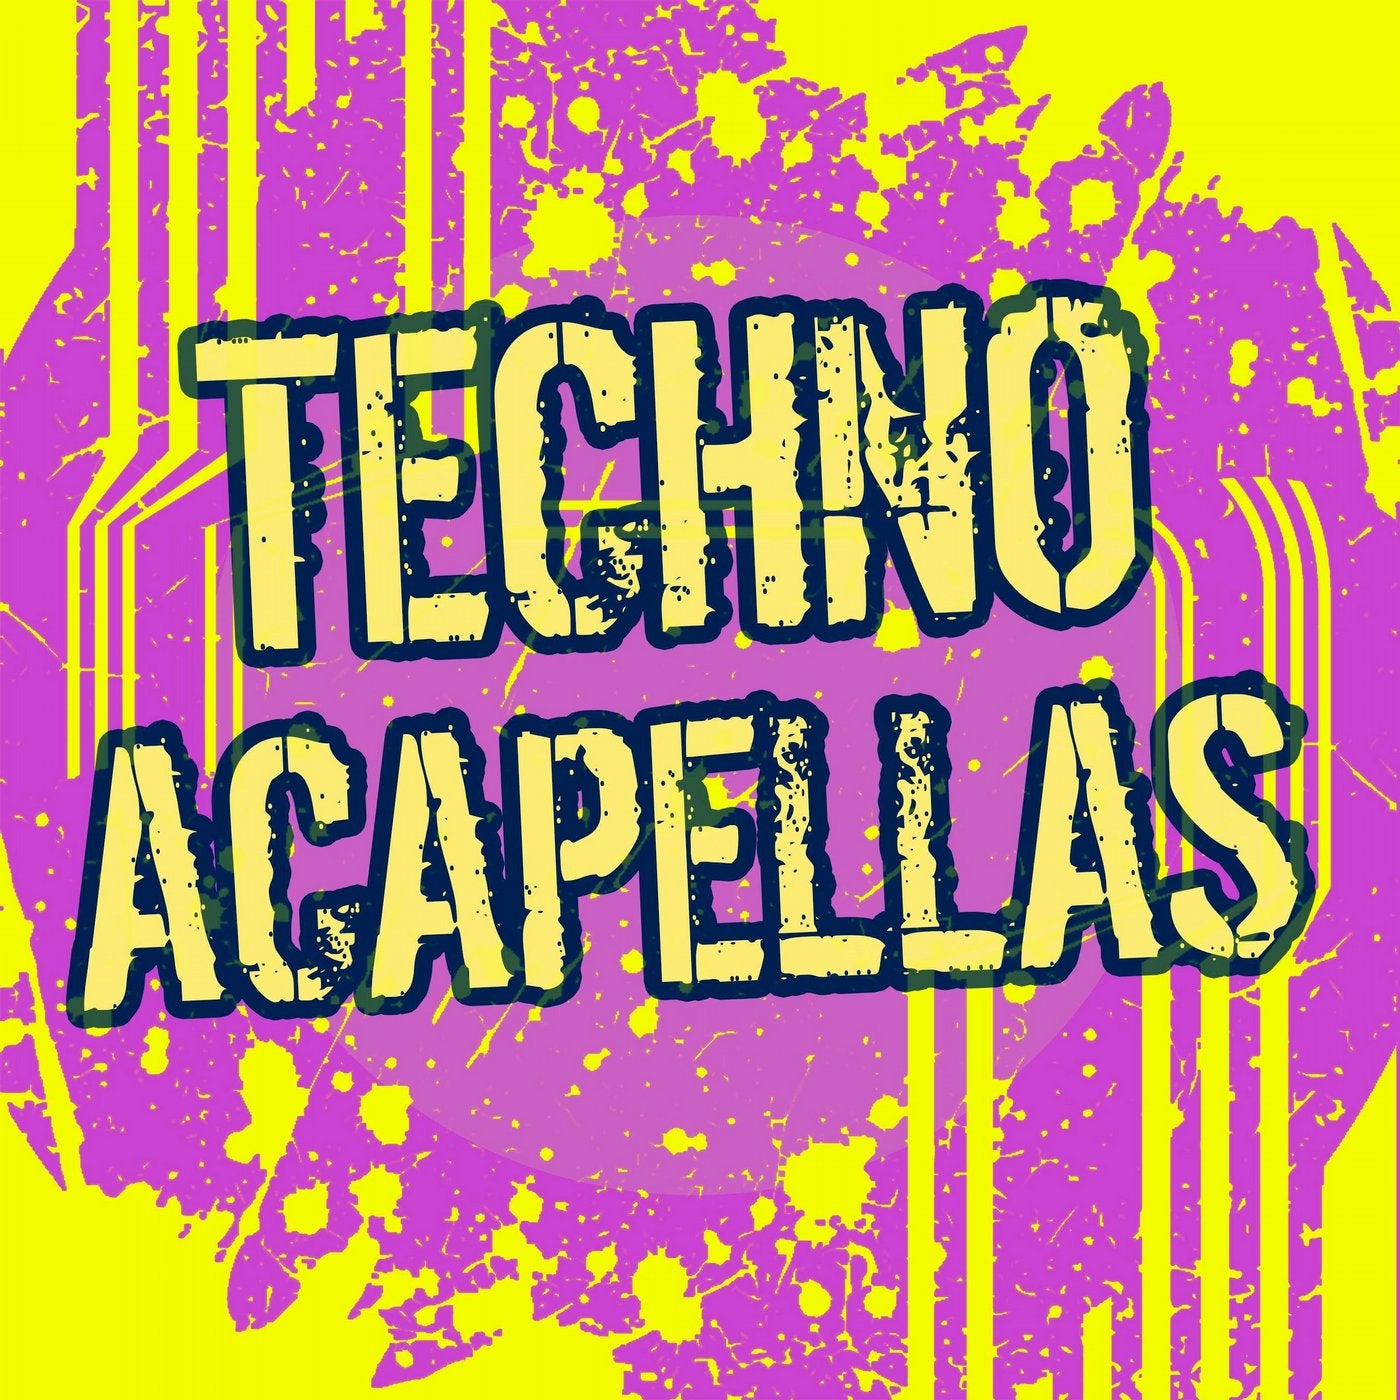 Techno Acapellas